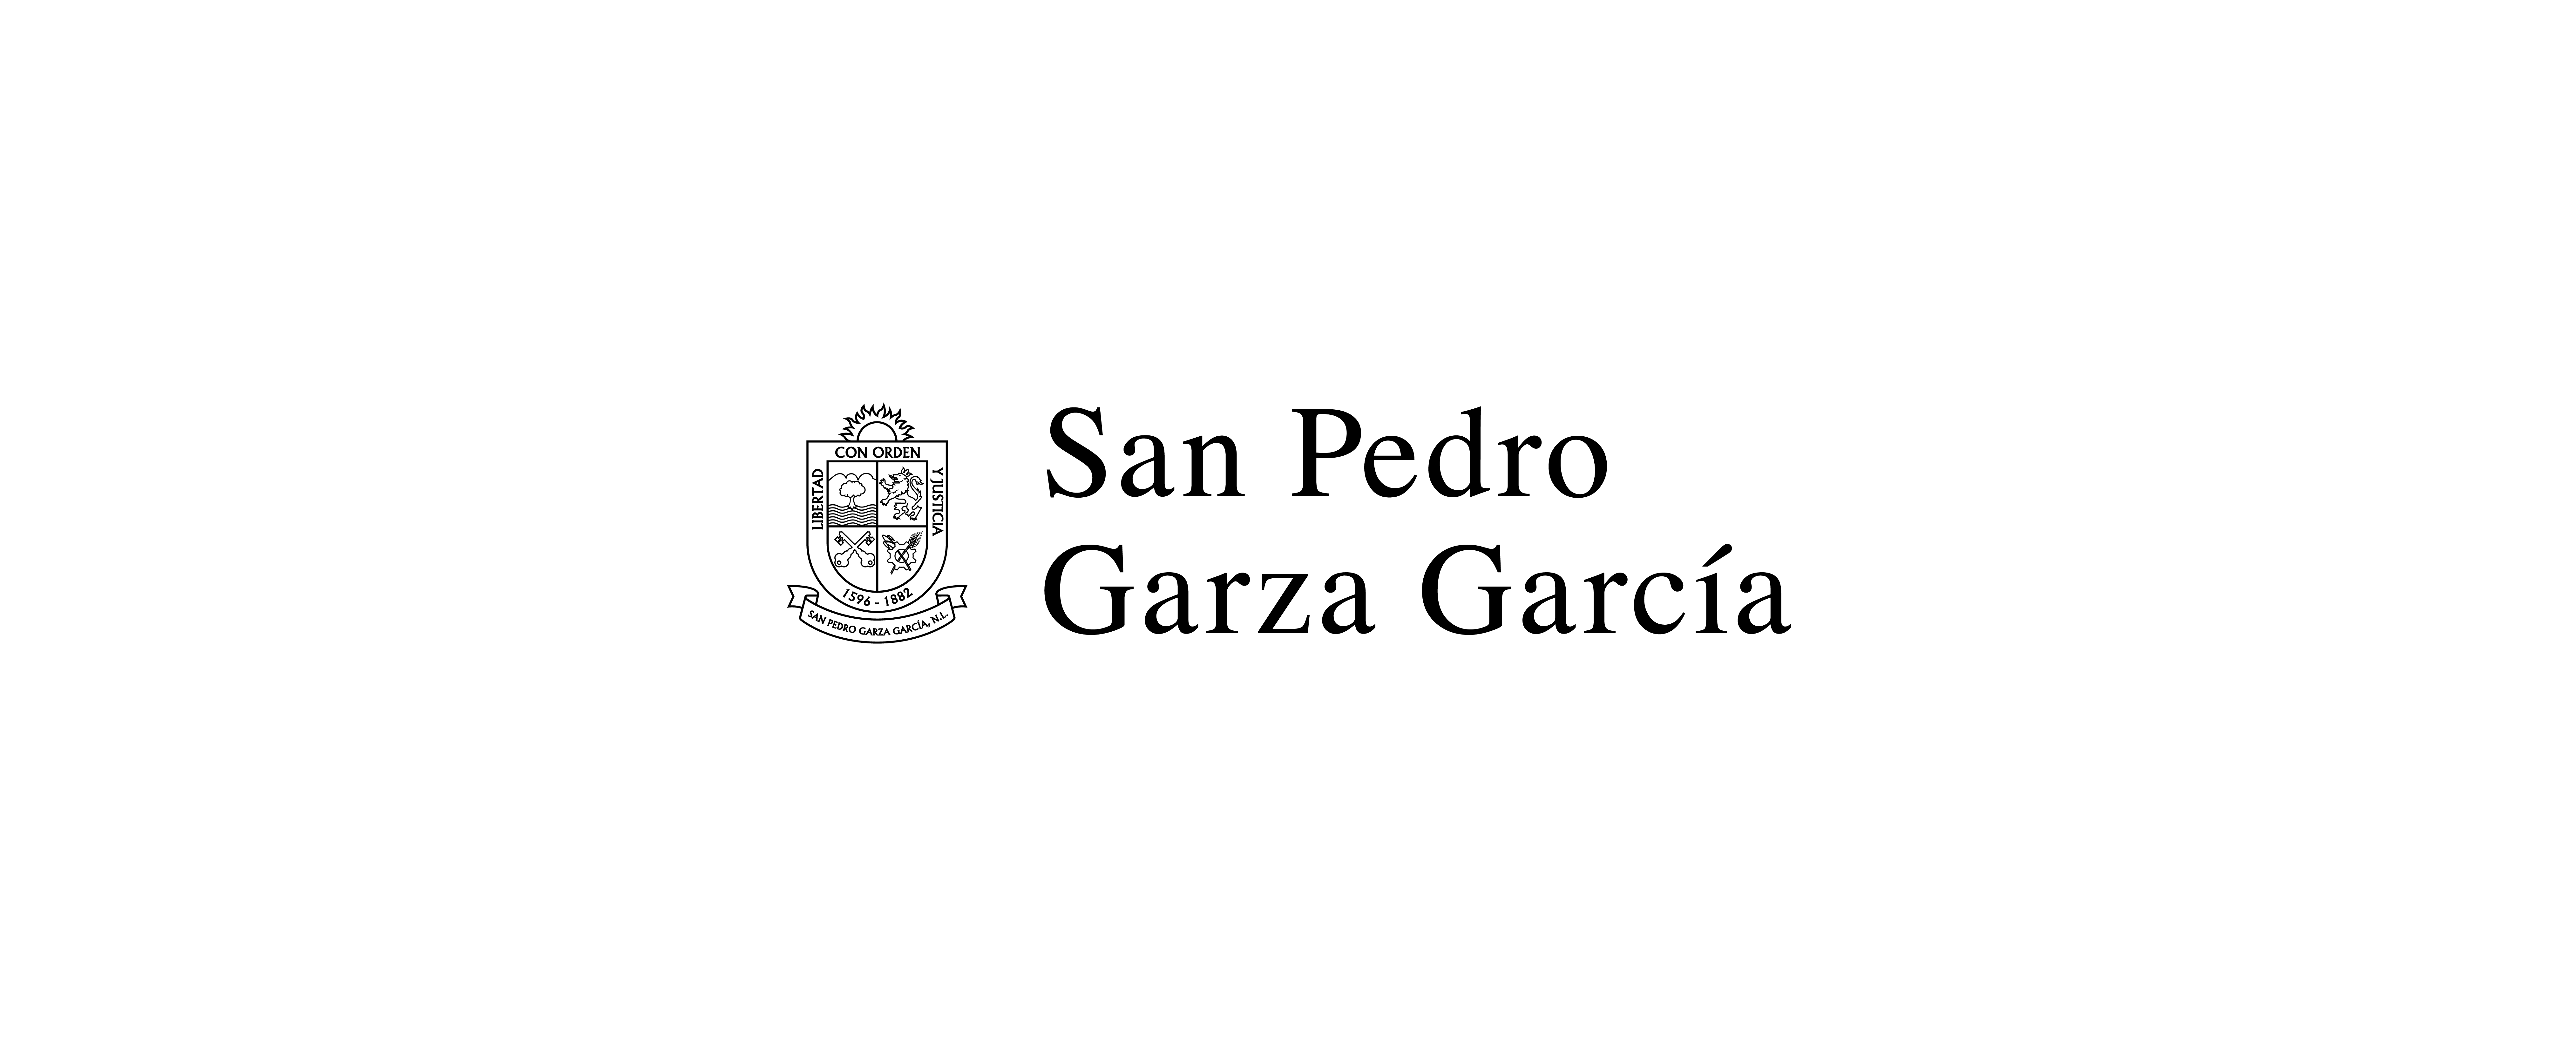 Lanza San Pedro a consulta reglamentos de cambio climático y de protección ambiental